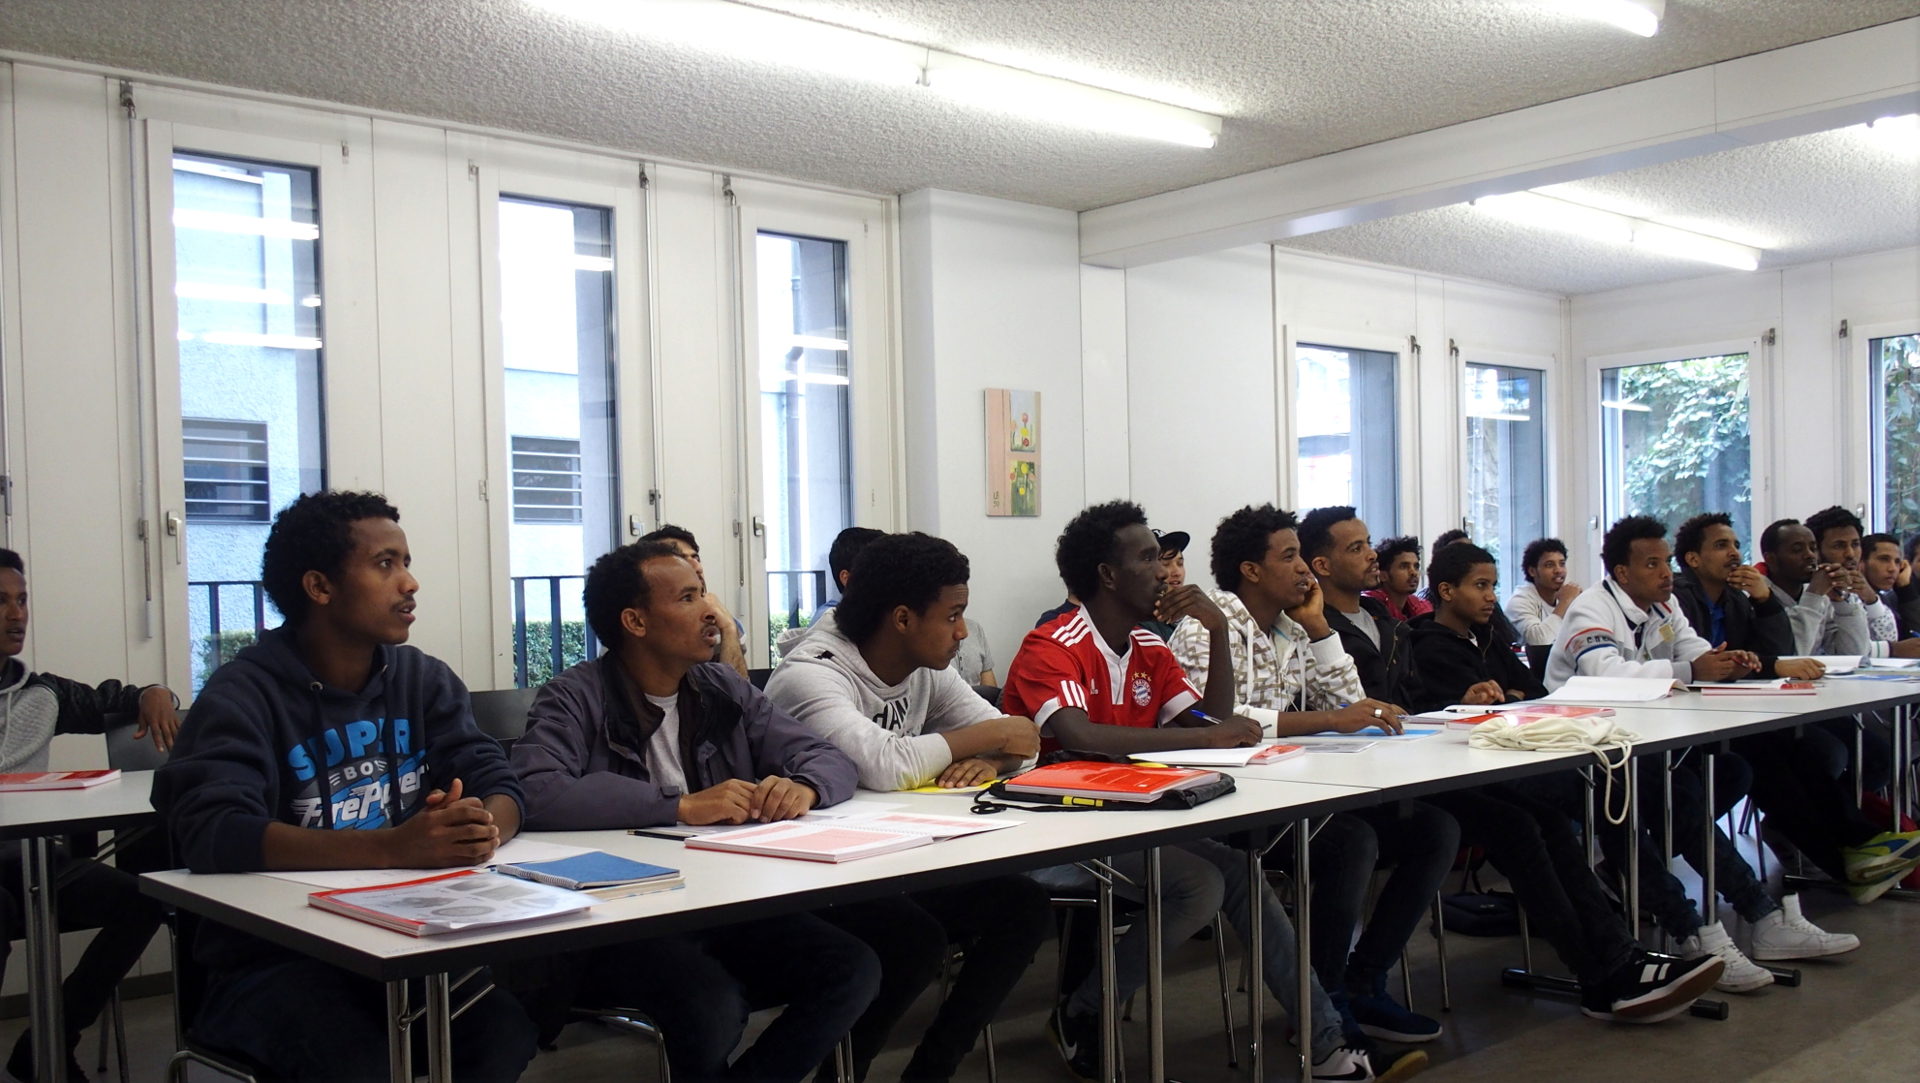 Projekt für Flüchtlinge: "Welcome2school" im Pfarreizentrum Liebfrauen in Zürich